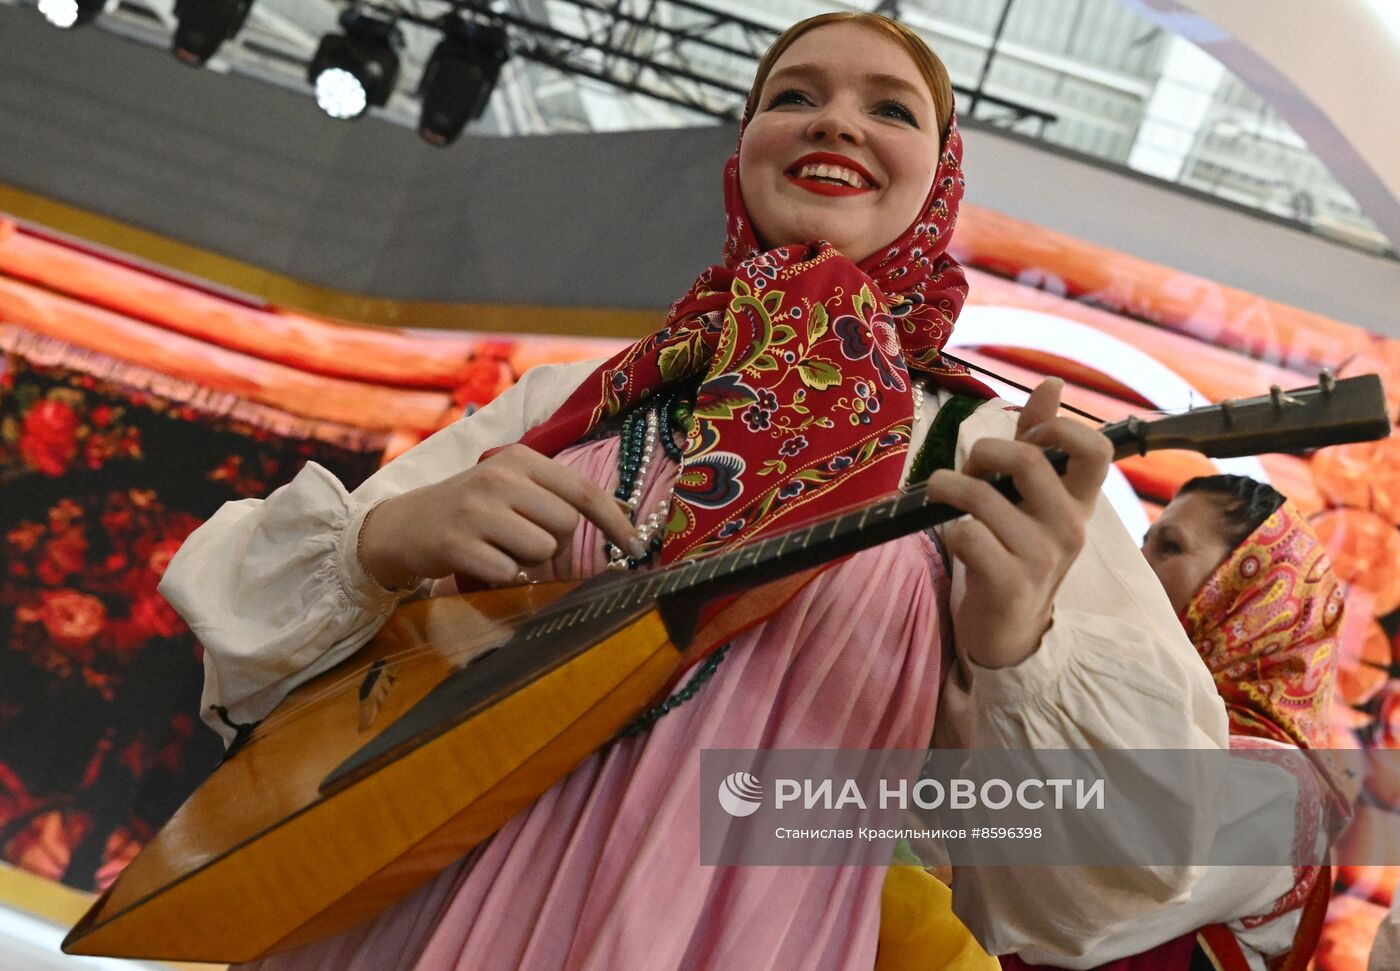 Выставка "Россия". Торжественная церемония бракосочетания пары из города Курска